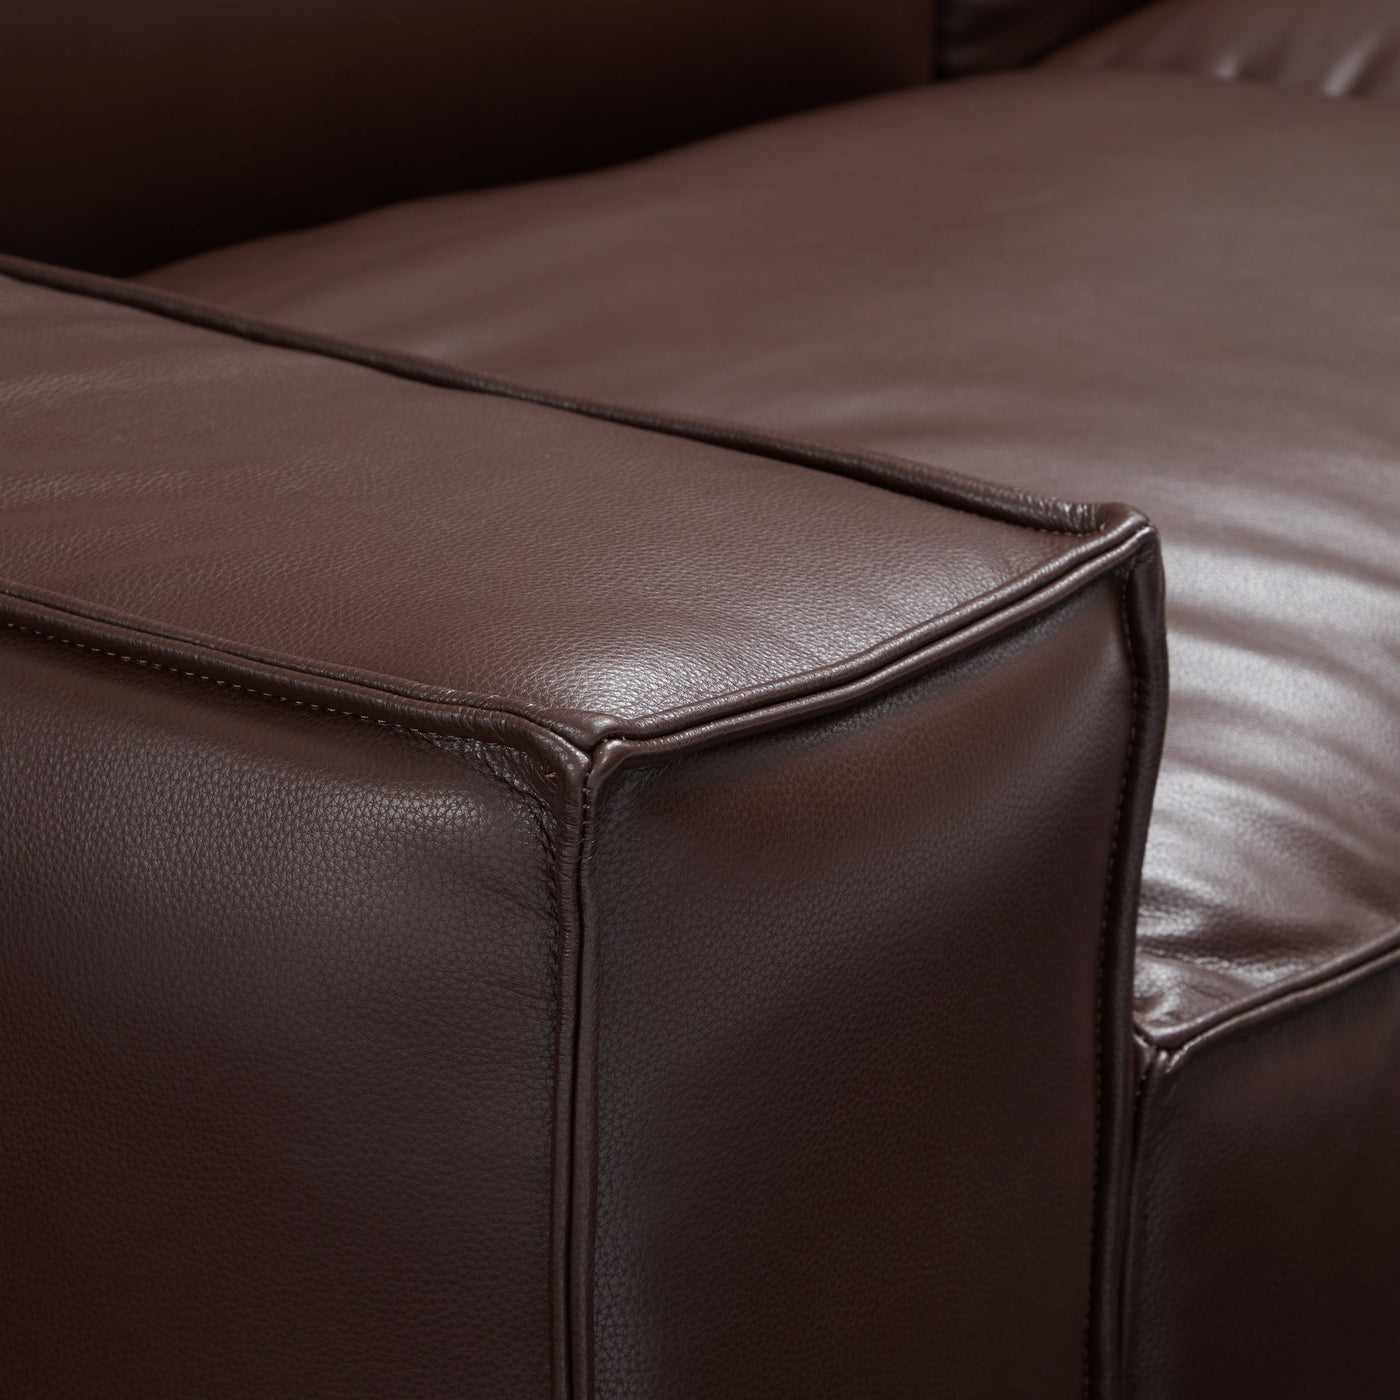 Luxury Minimalist Dark Brown Leather Armchair-Dark Brown